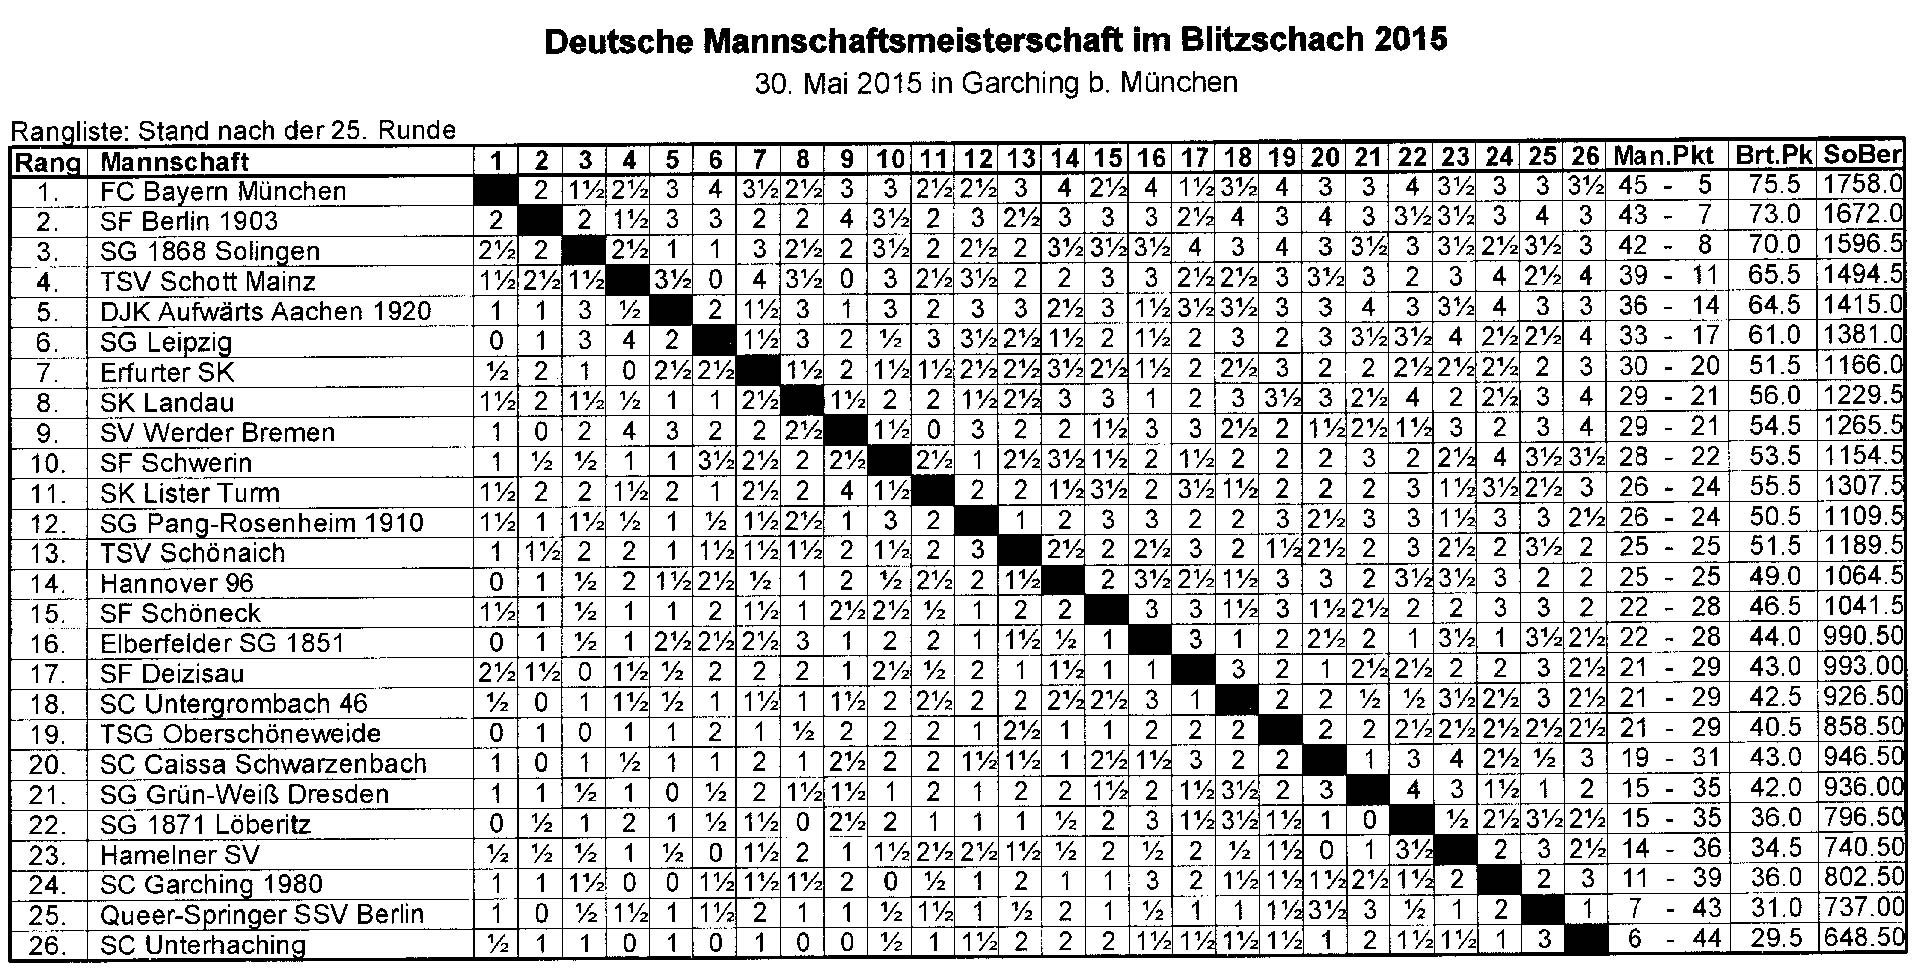 Die Abschlußtabelle der deutschen Blitzschachmeisterschaft für 4er-Mannschaften